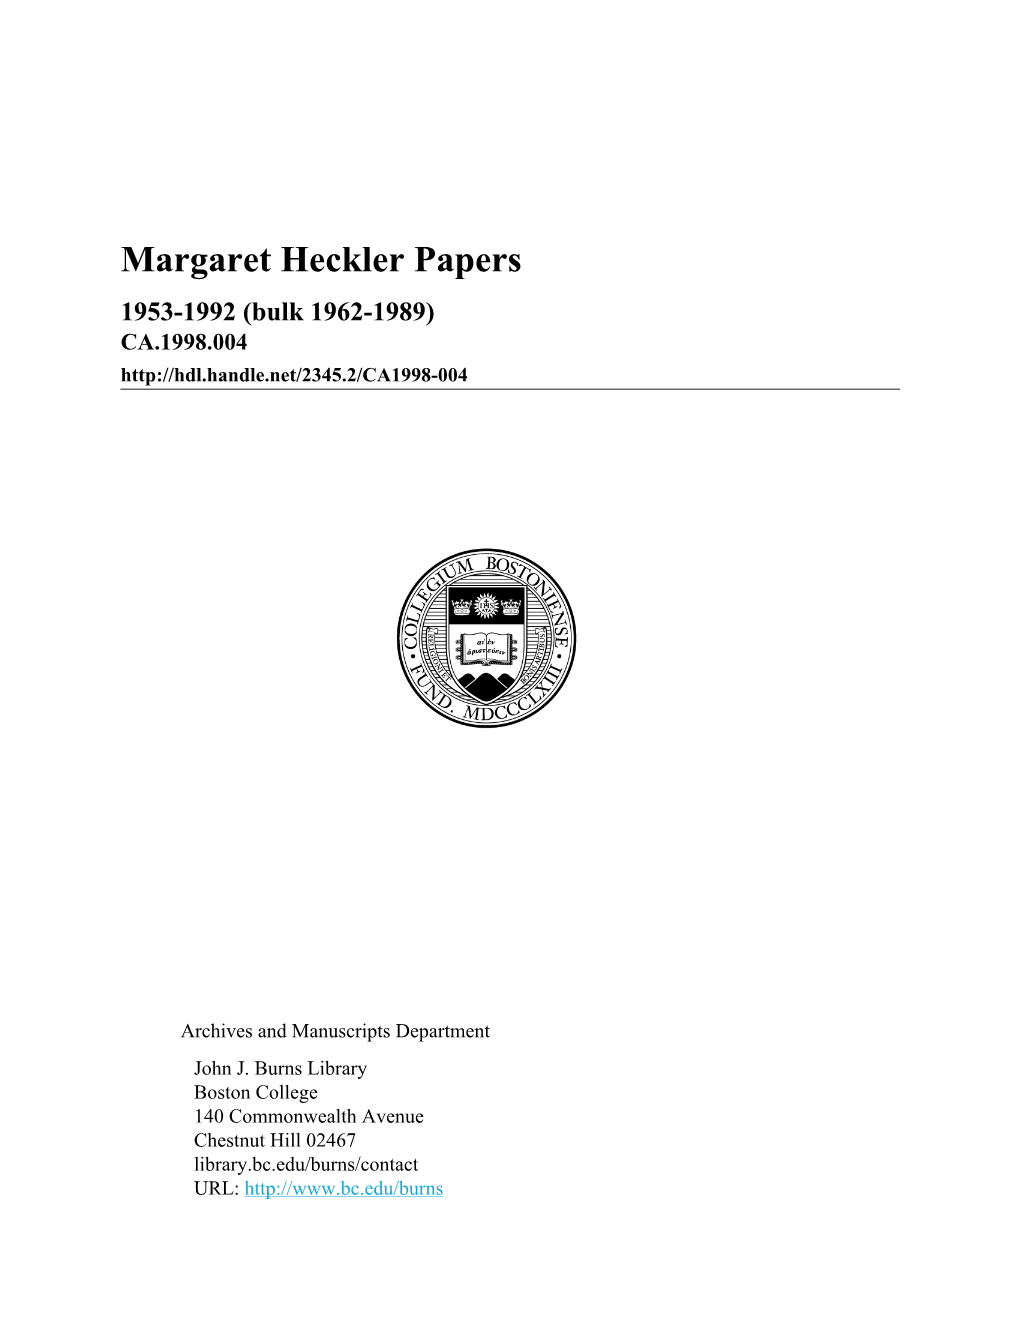 Margaret Heckler Papers 1953-1992 (Bulk 1962-1989) CA.1998.004